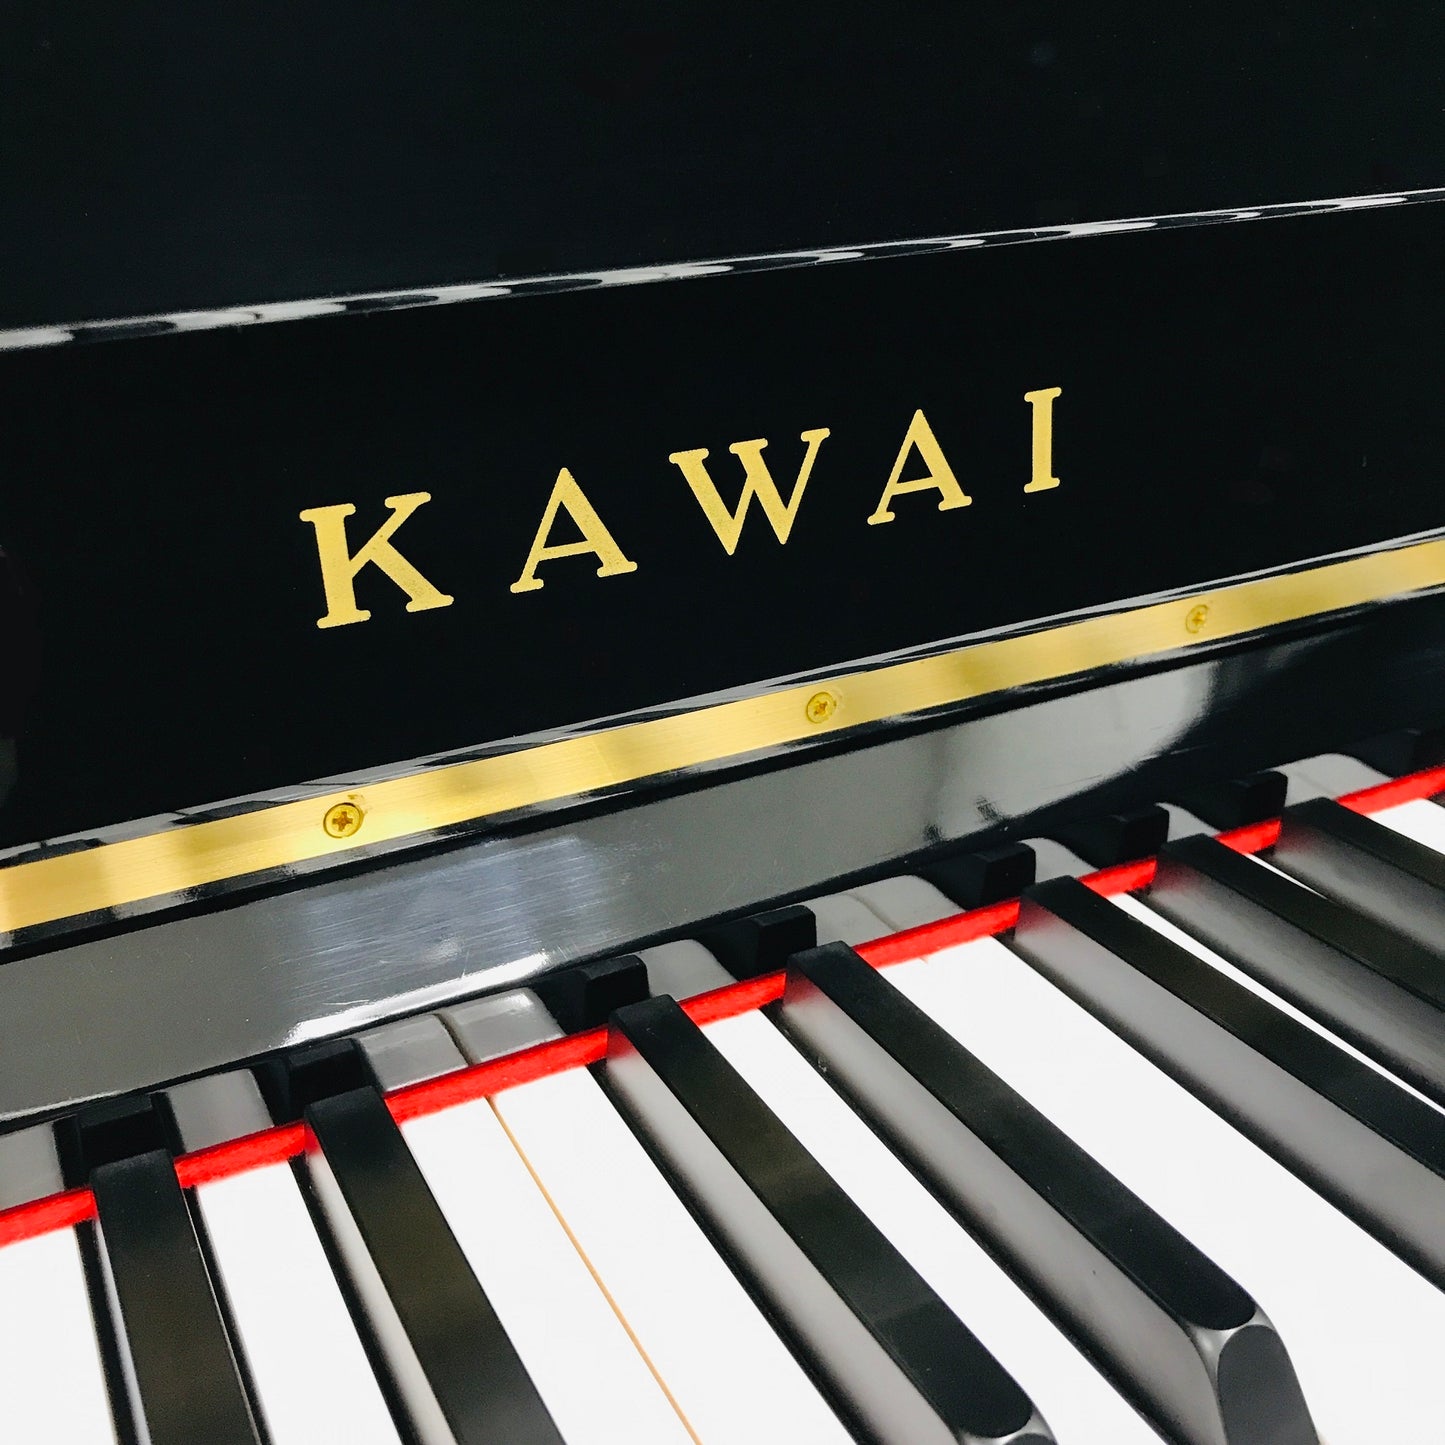 Kawai K18-E Upright Piano